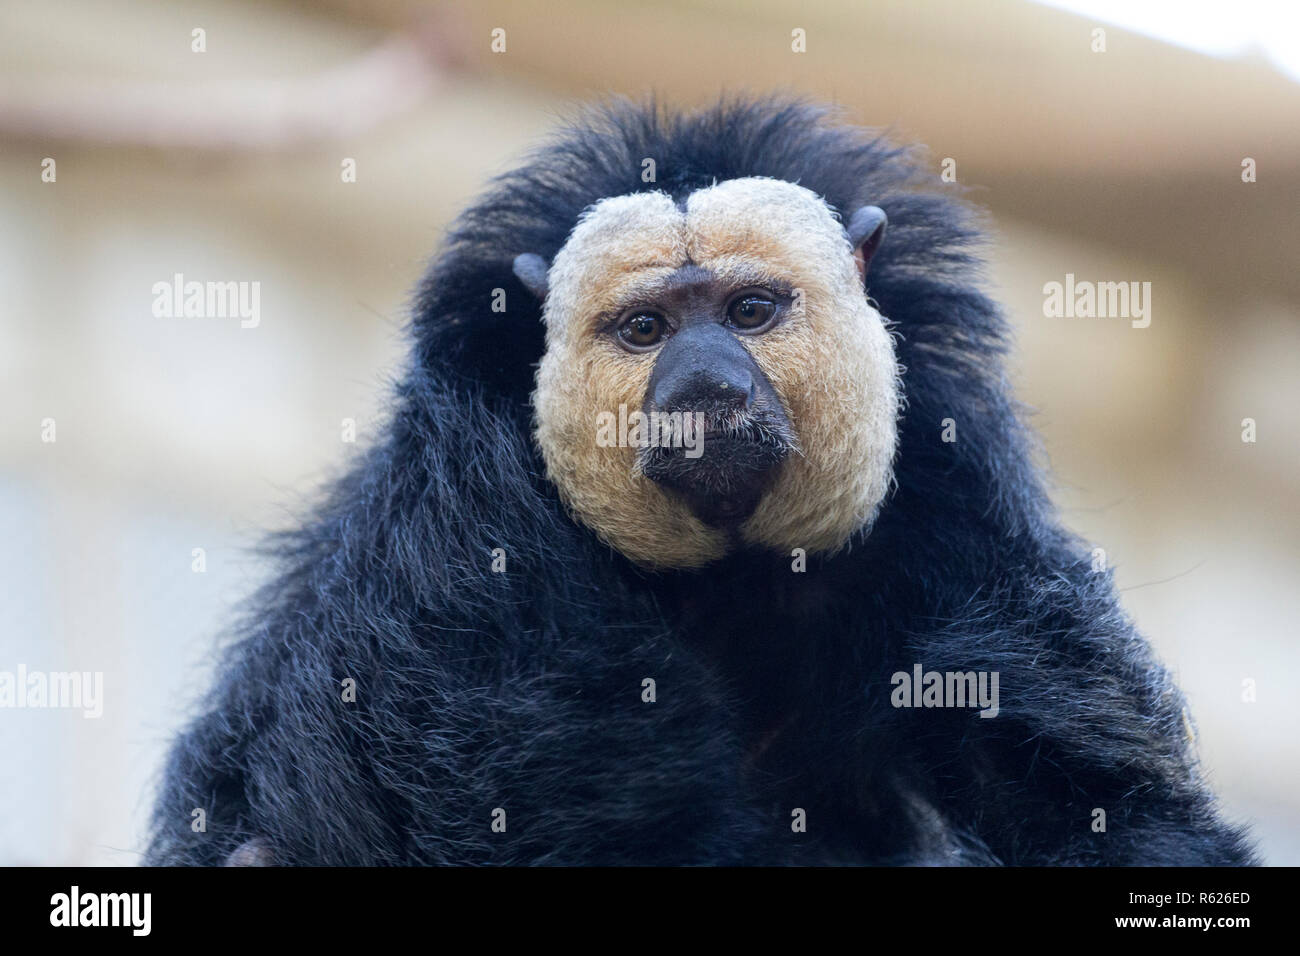 Saki à face blanche, primat de l'ordre de grands singes au nez. Banque D'Images